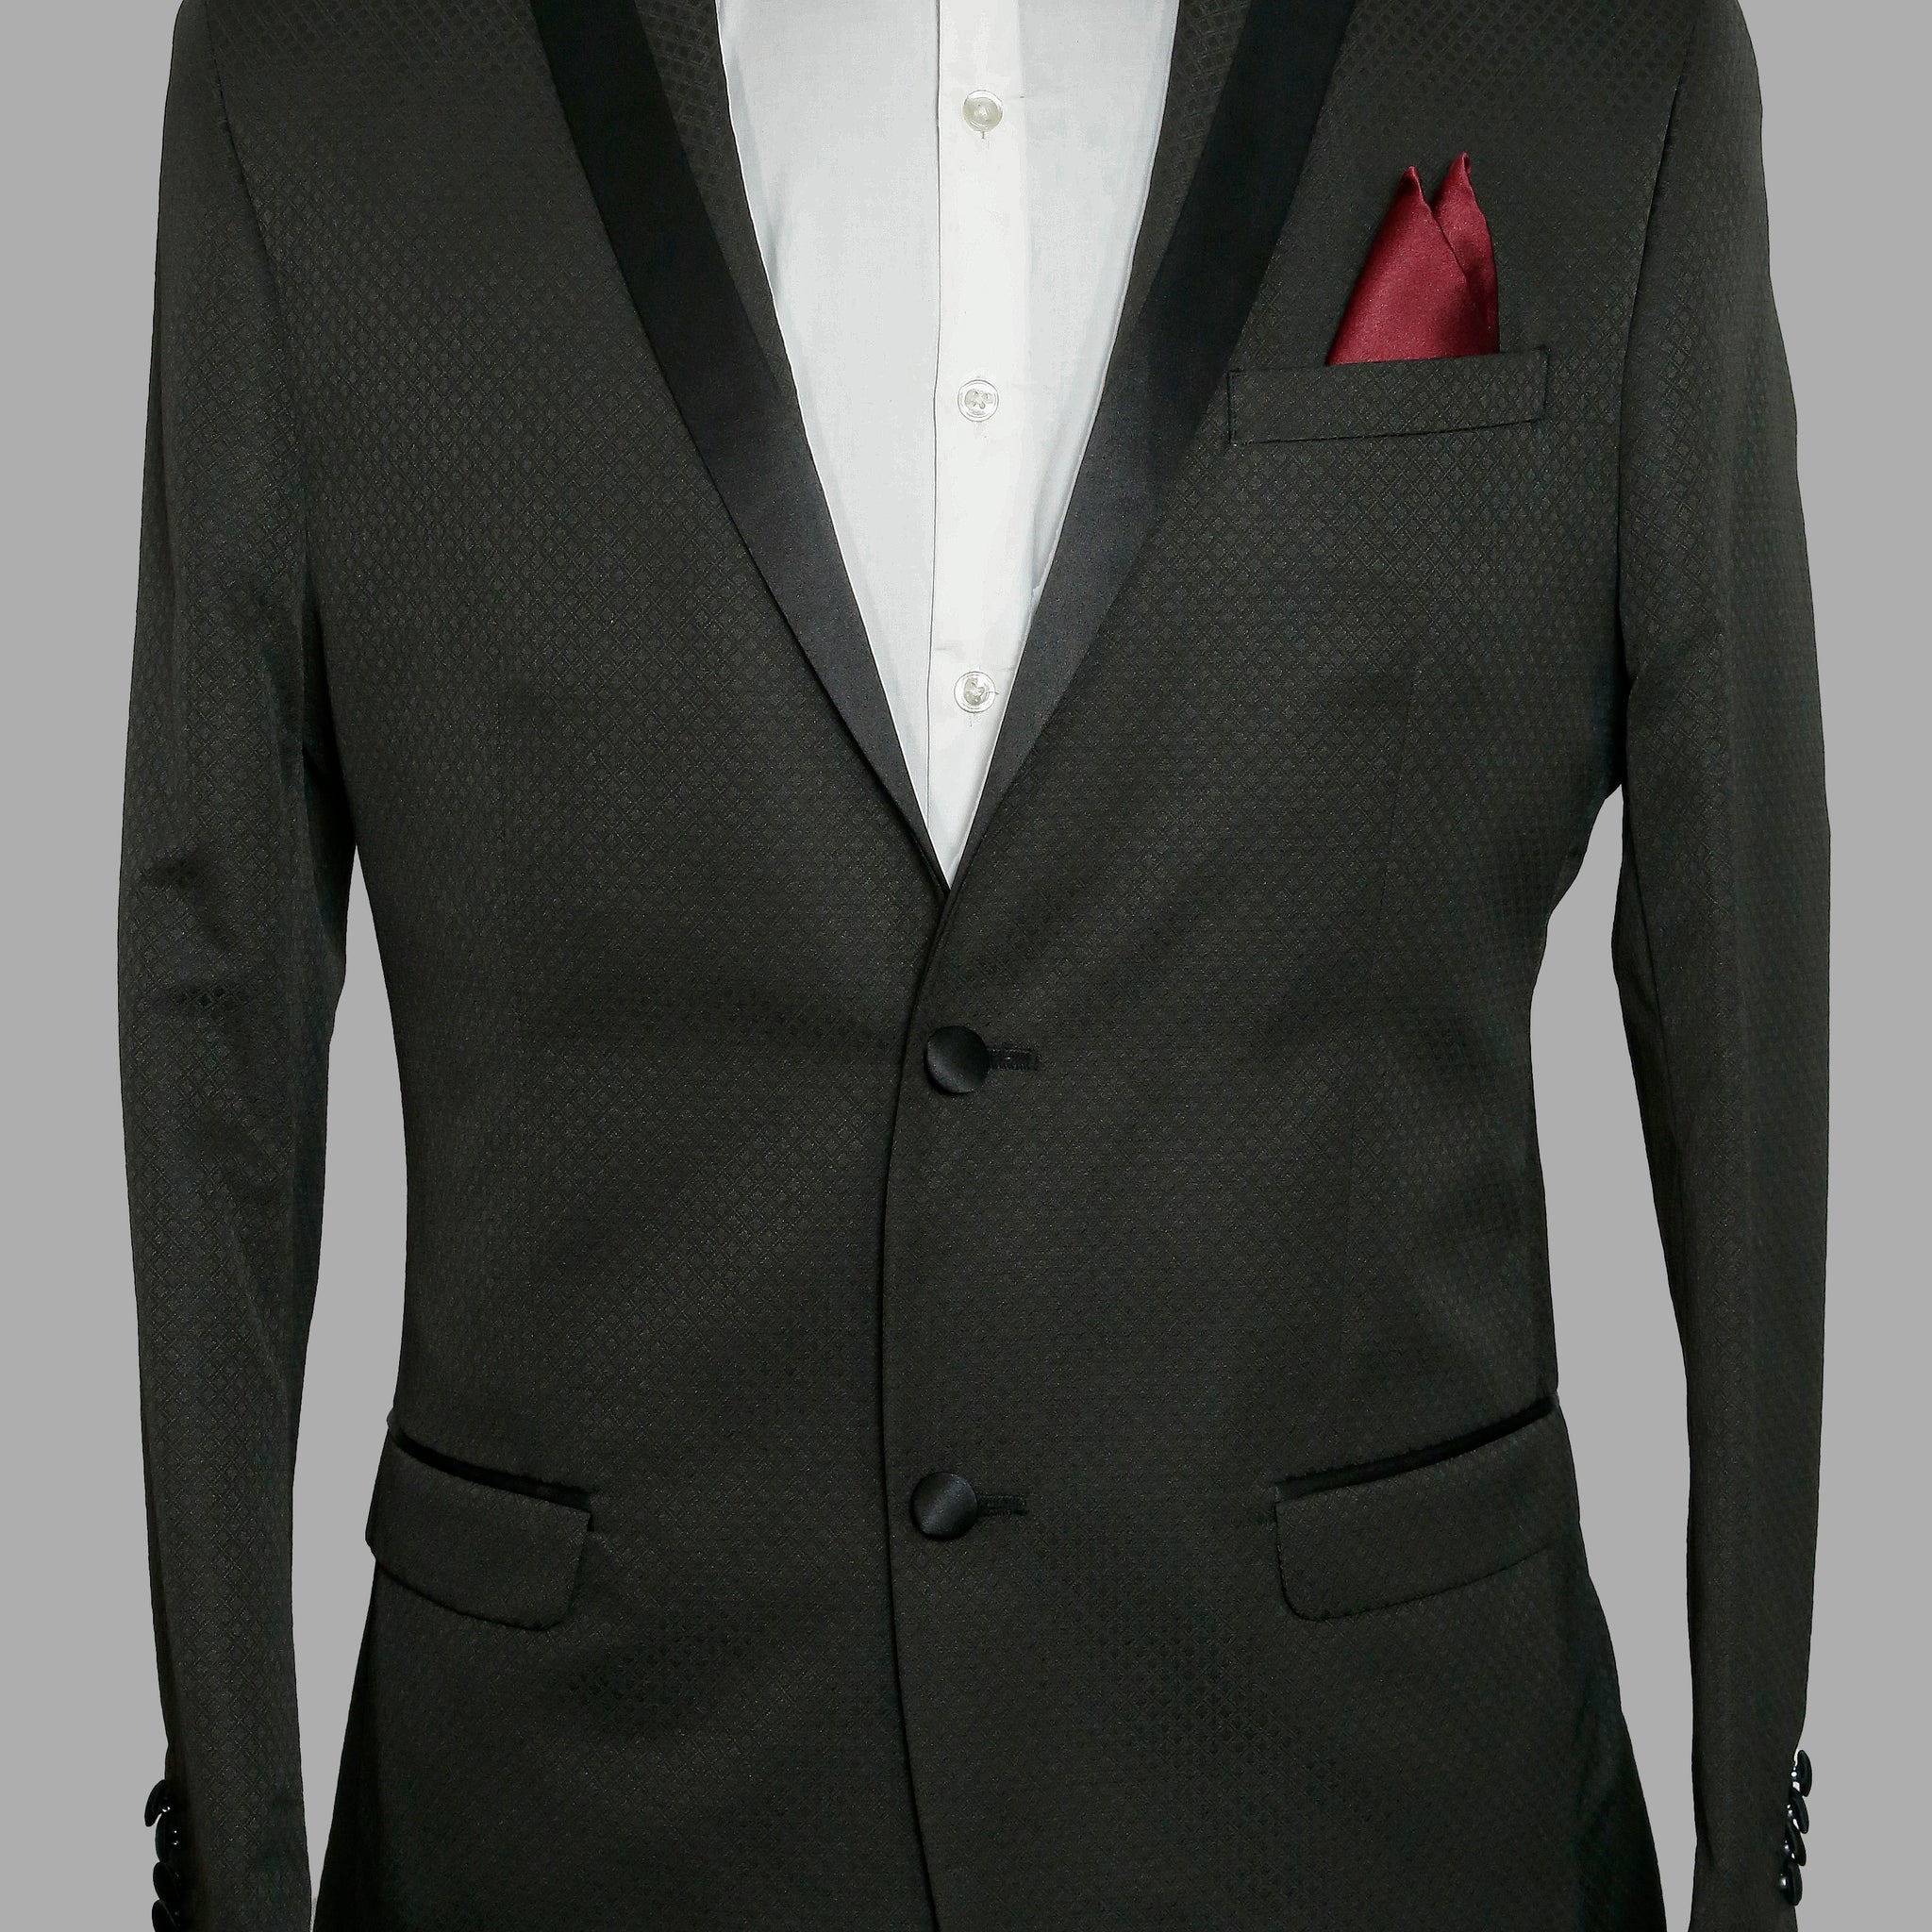 Black Textured Designer Peak Collar Suit